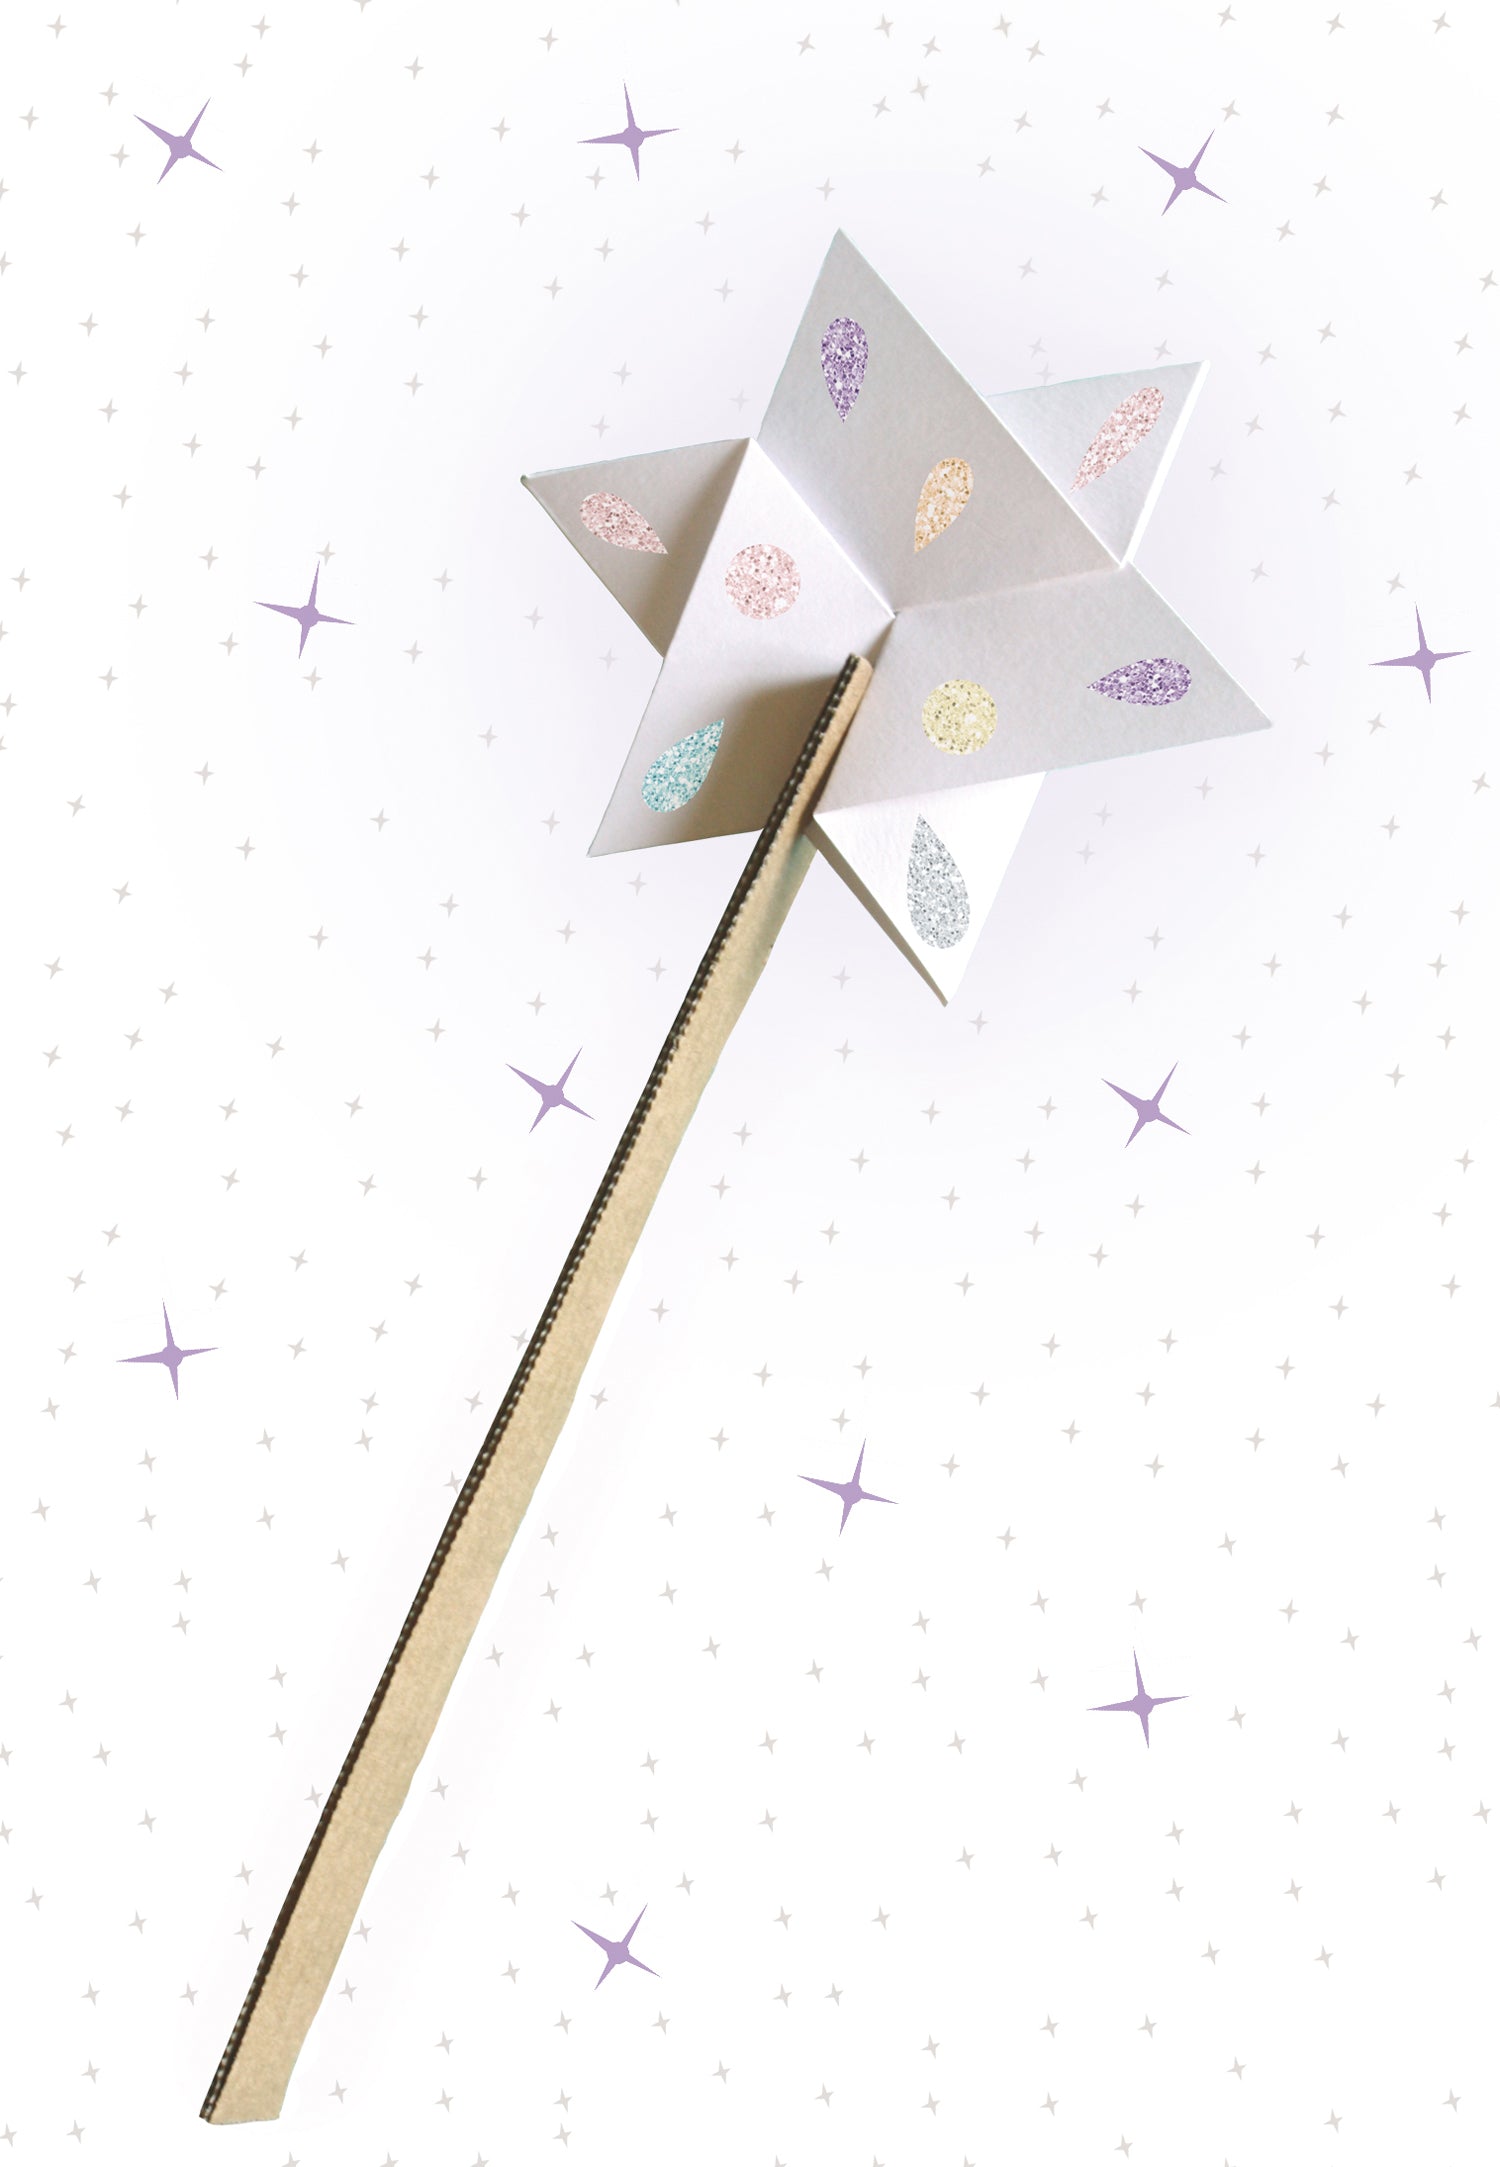 6 baguettes magiques à fabriquer en papier et carton écoresponsable. Kit créatif made in France. Sur la photo, une belle baguette magique avec stickers à paillettes. 